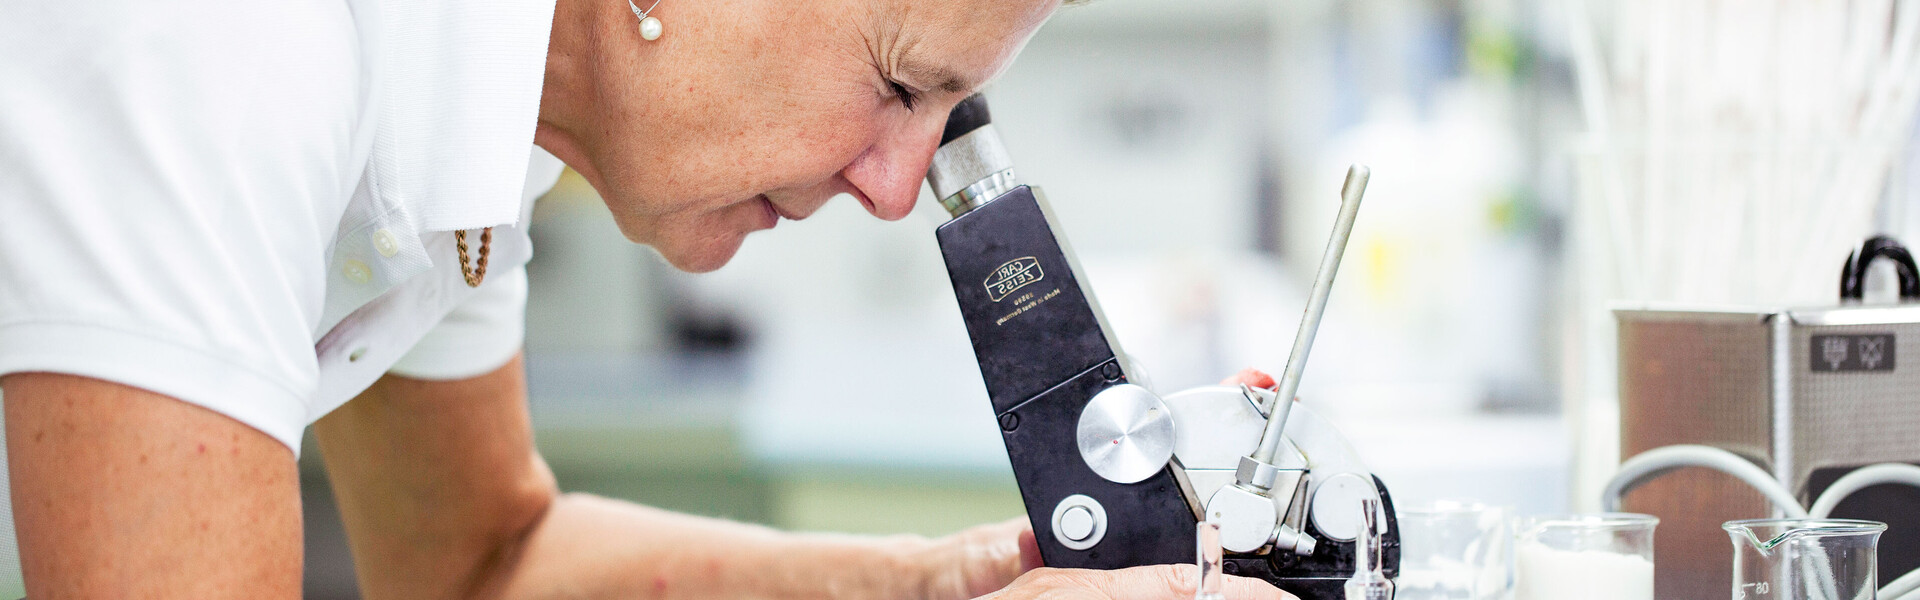 Forscherin beugt sich über Mikroskop. Die Sixtus-Forschung entwickelt Hautpflege für die Zukunft weiter.